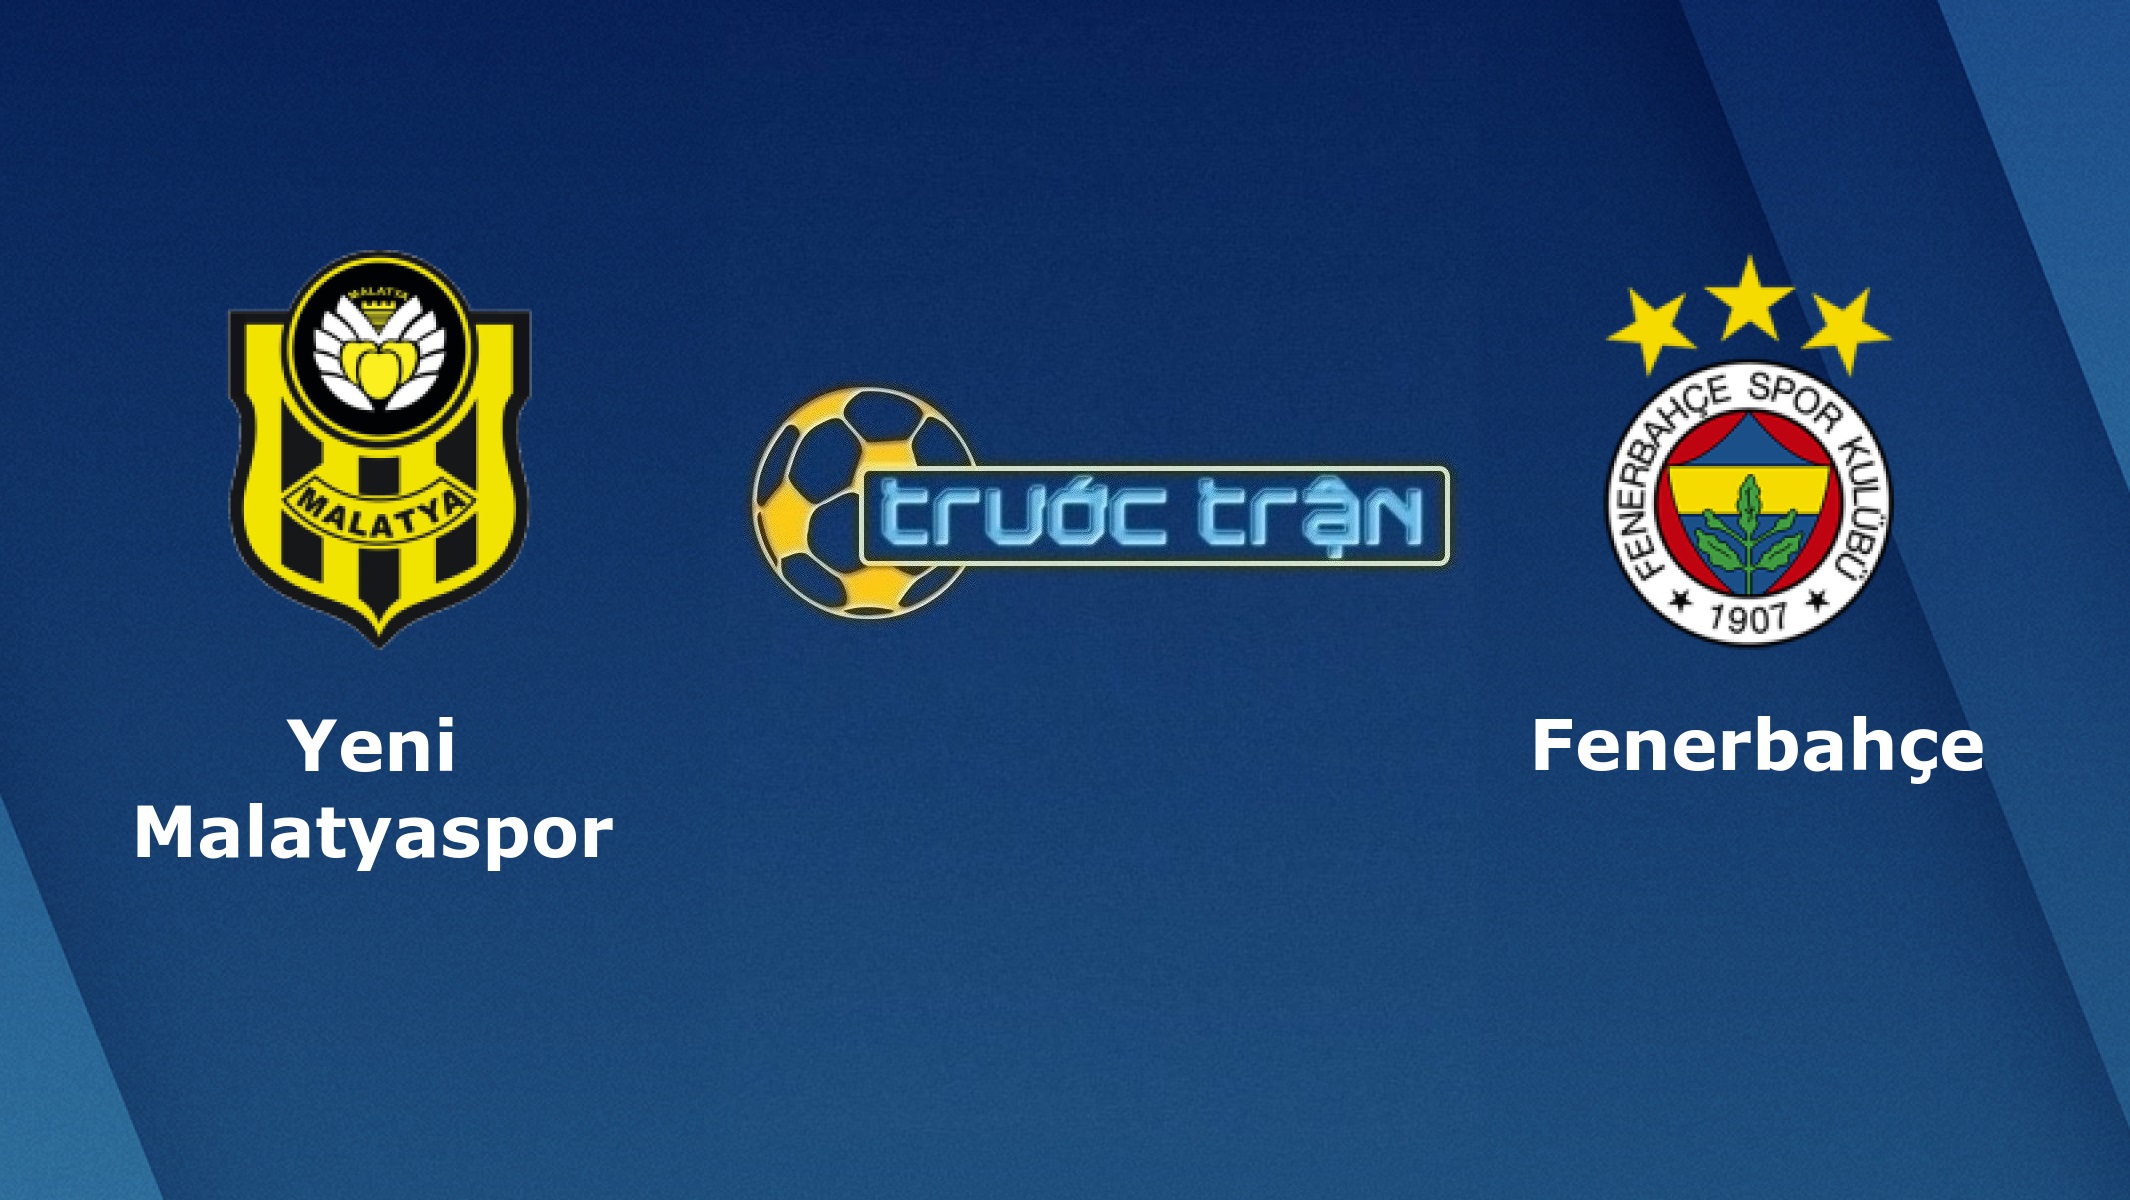 Yeni Malatyaspor vs Fenerbahce – Tip kèo bóng đá hôm nay – 23h00 08/04/2021